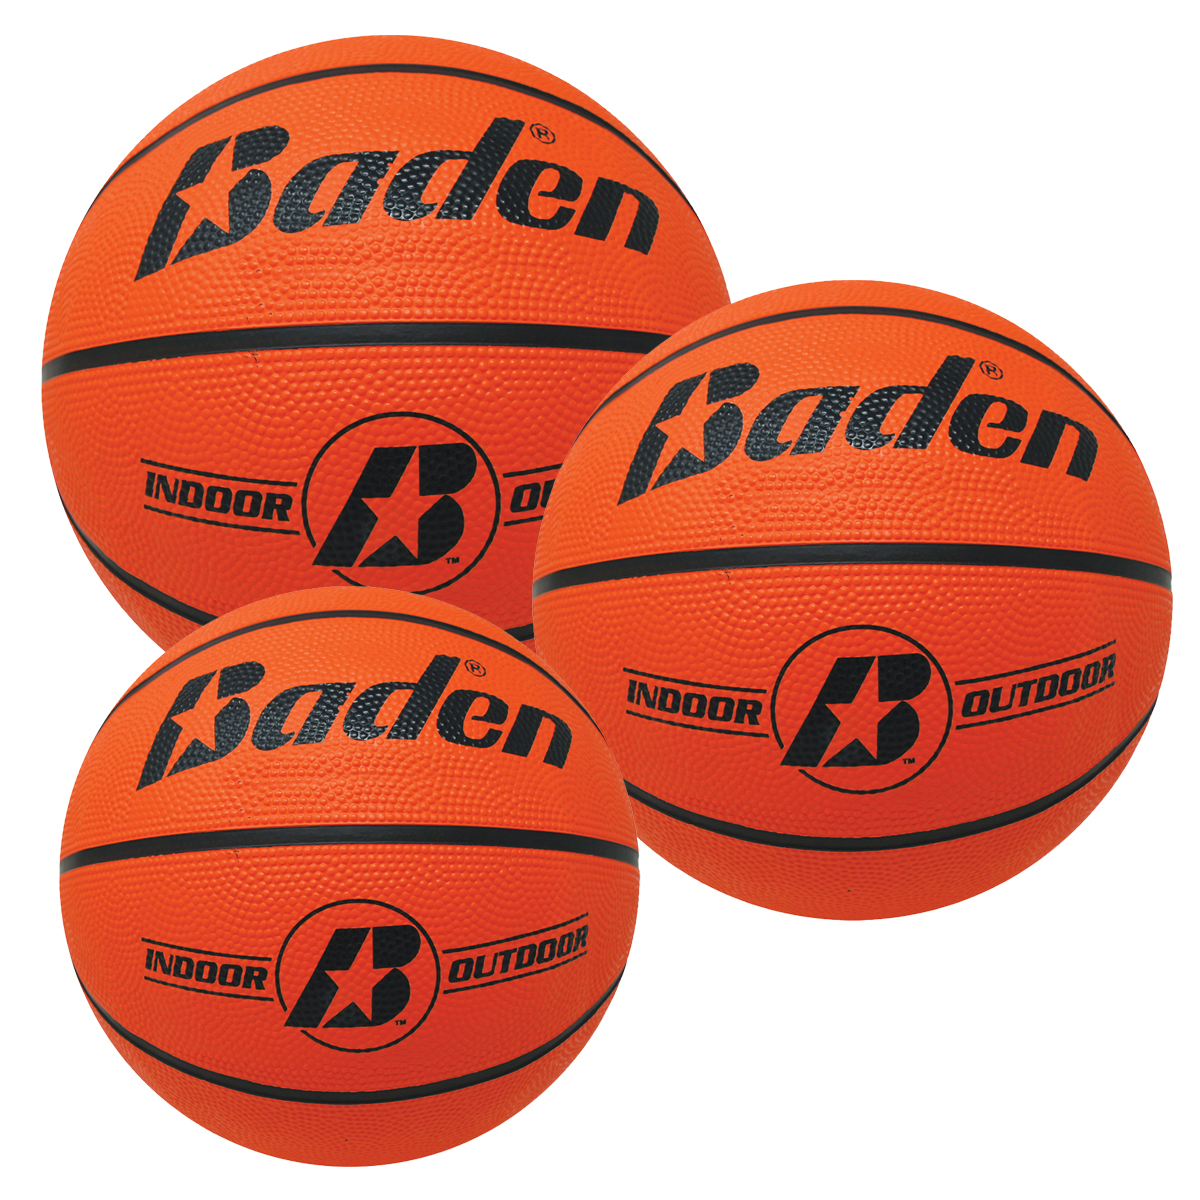 Baden Rubber Basketballs